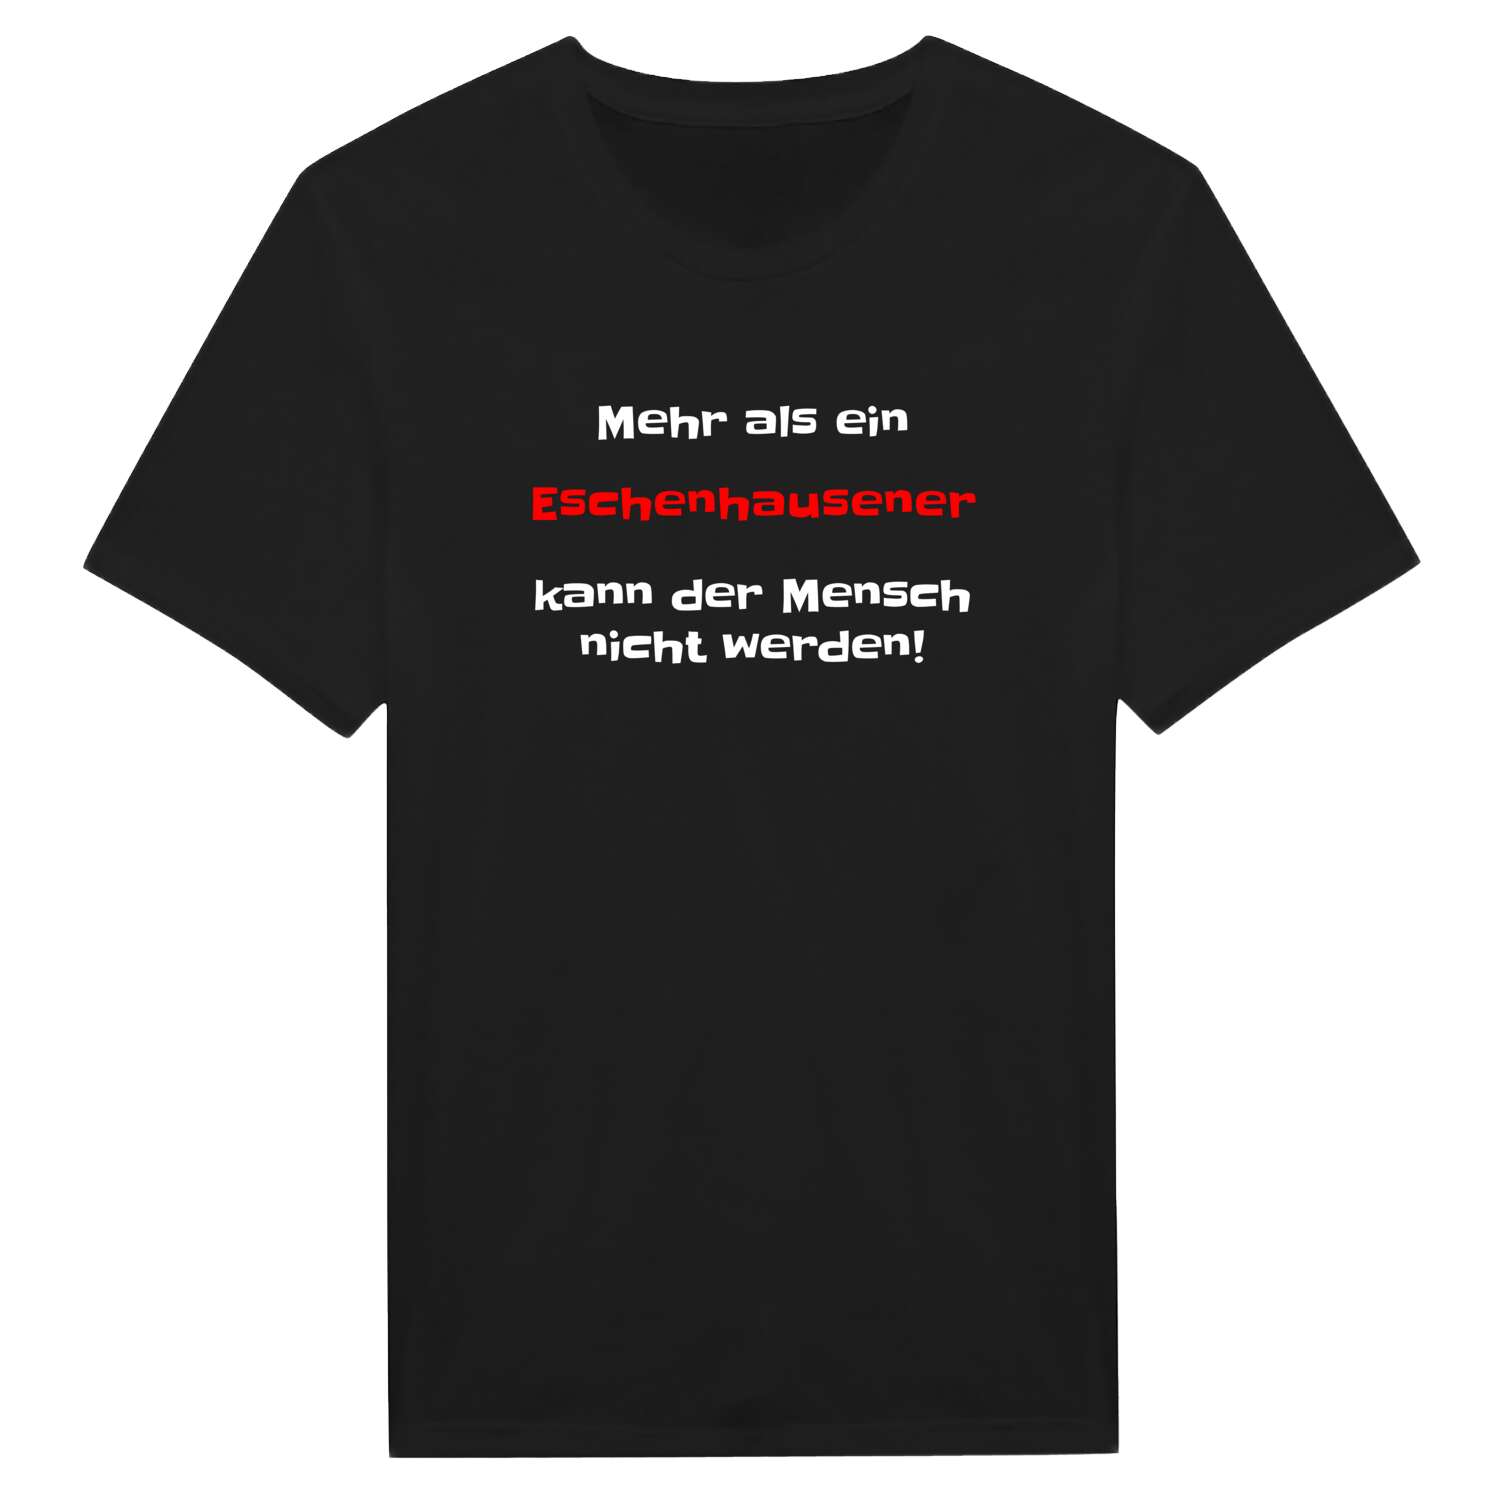 Eschenhausen T-Shirt »Mehr als ein«